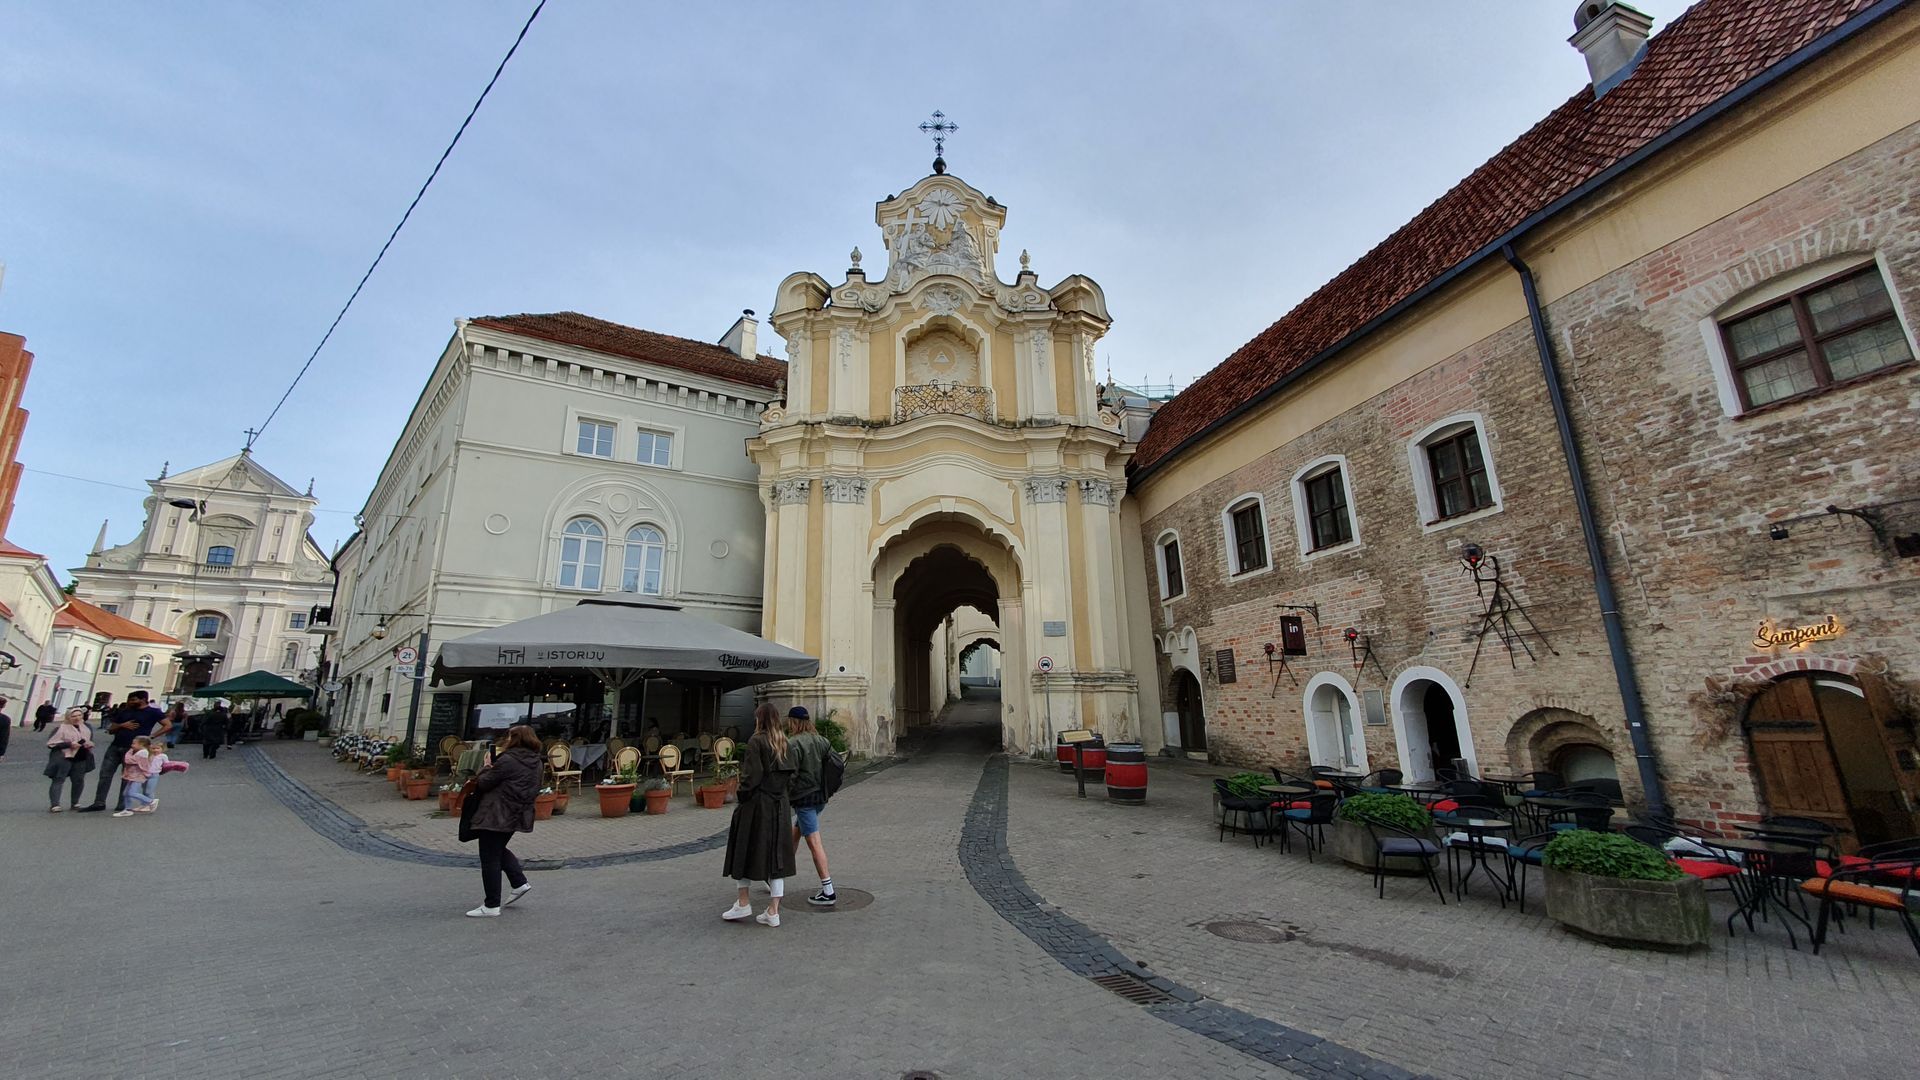 Vilniaus Švč. Trejybės Graikų apeigų katalikų bažnyčia